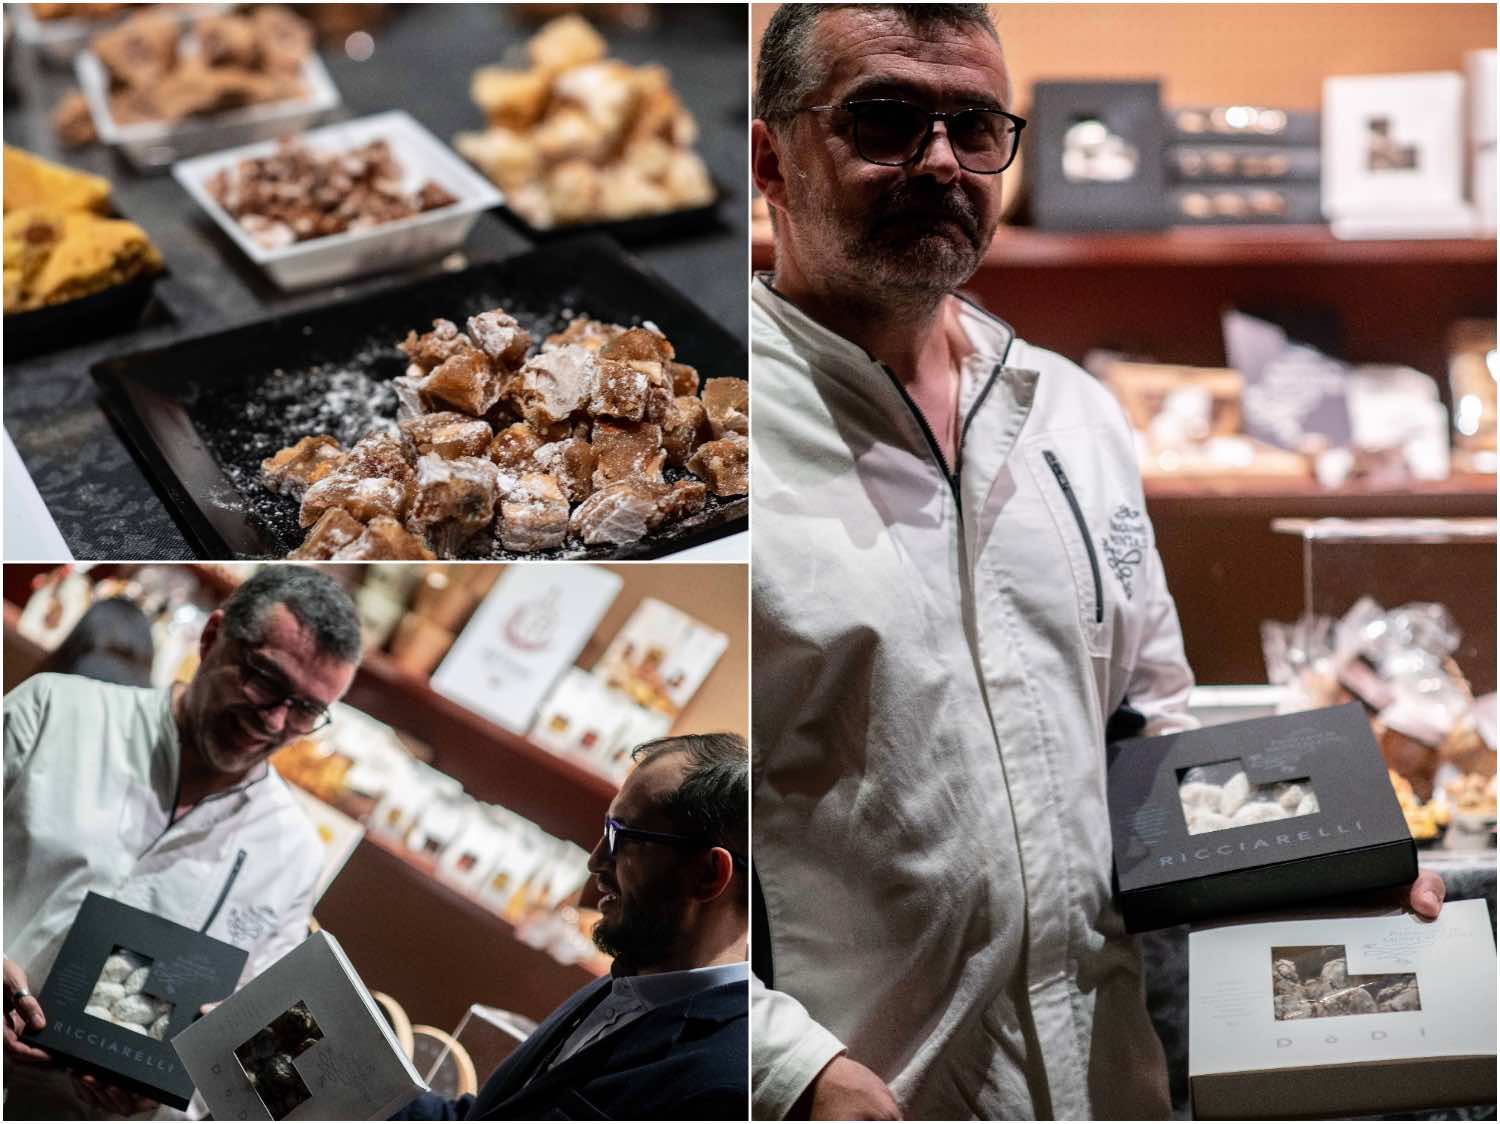 Viaggio nel girone dei golosi al Pitti Taste 2019 alla scoperta dei dolci toscani: buccellato, cantucci, copate e pan di vendemmia